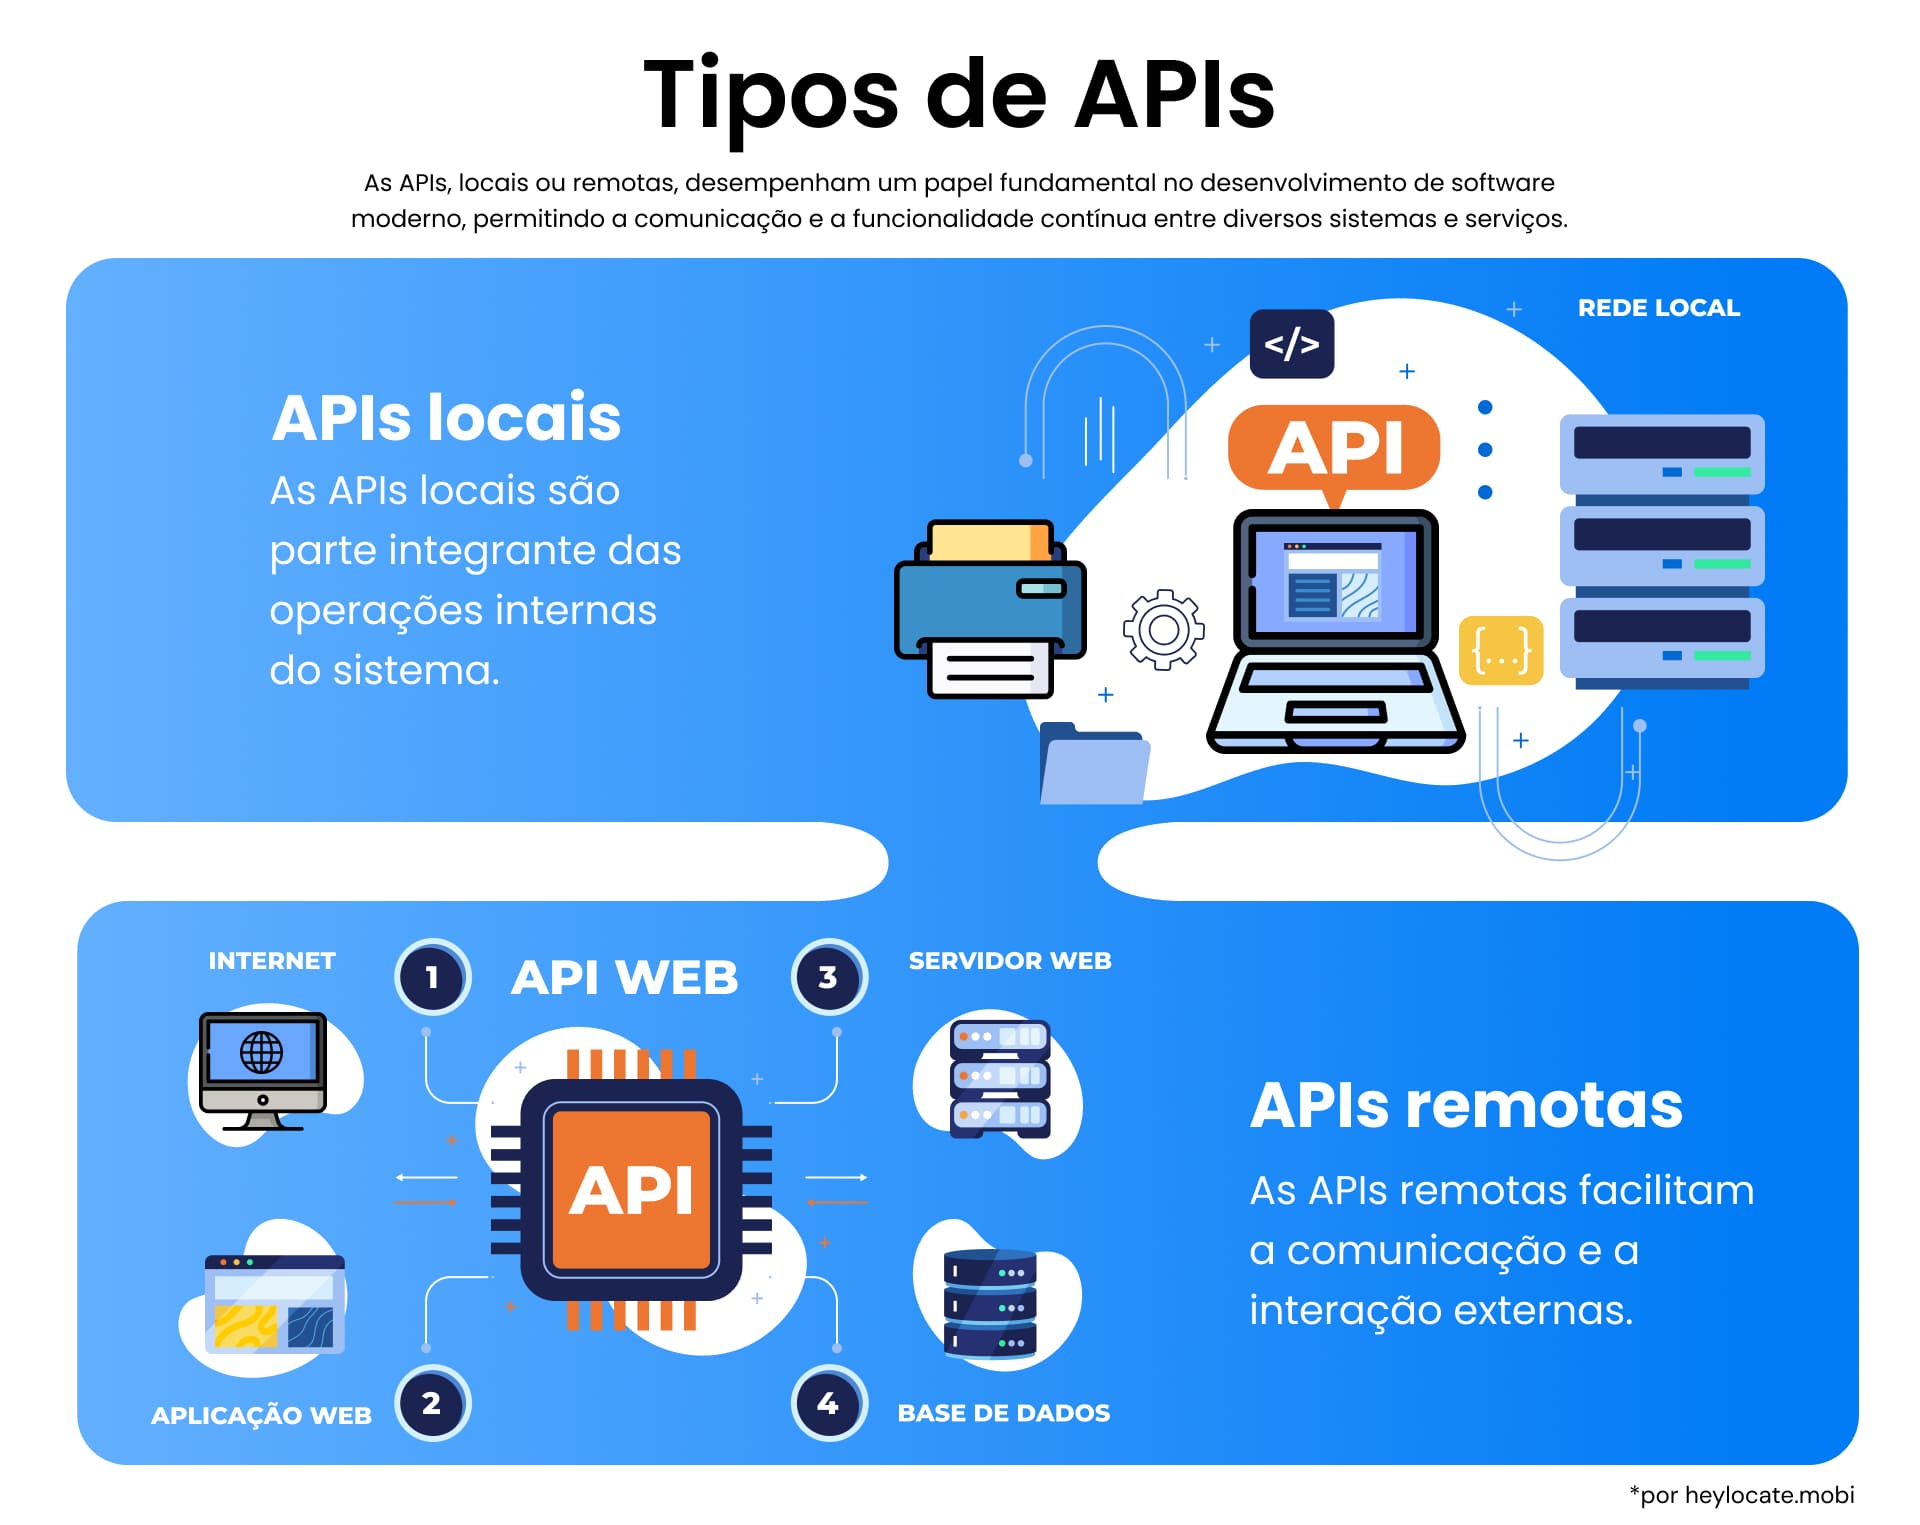 Gráfico educacional que mostra dois tipos de APIs: APIs locais, que são essenciais para as operações internas do sistema, e APIs remotas, que permitem a comunicação externa